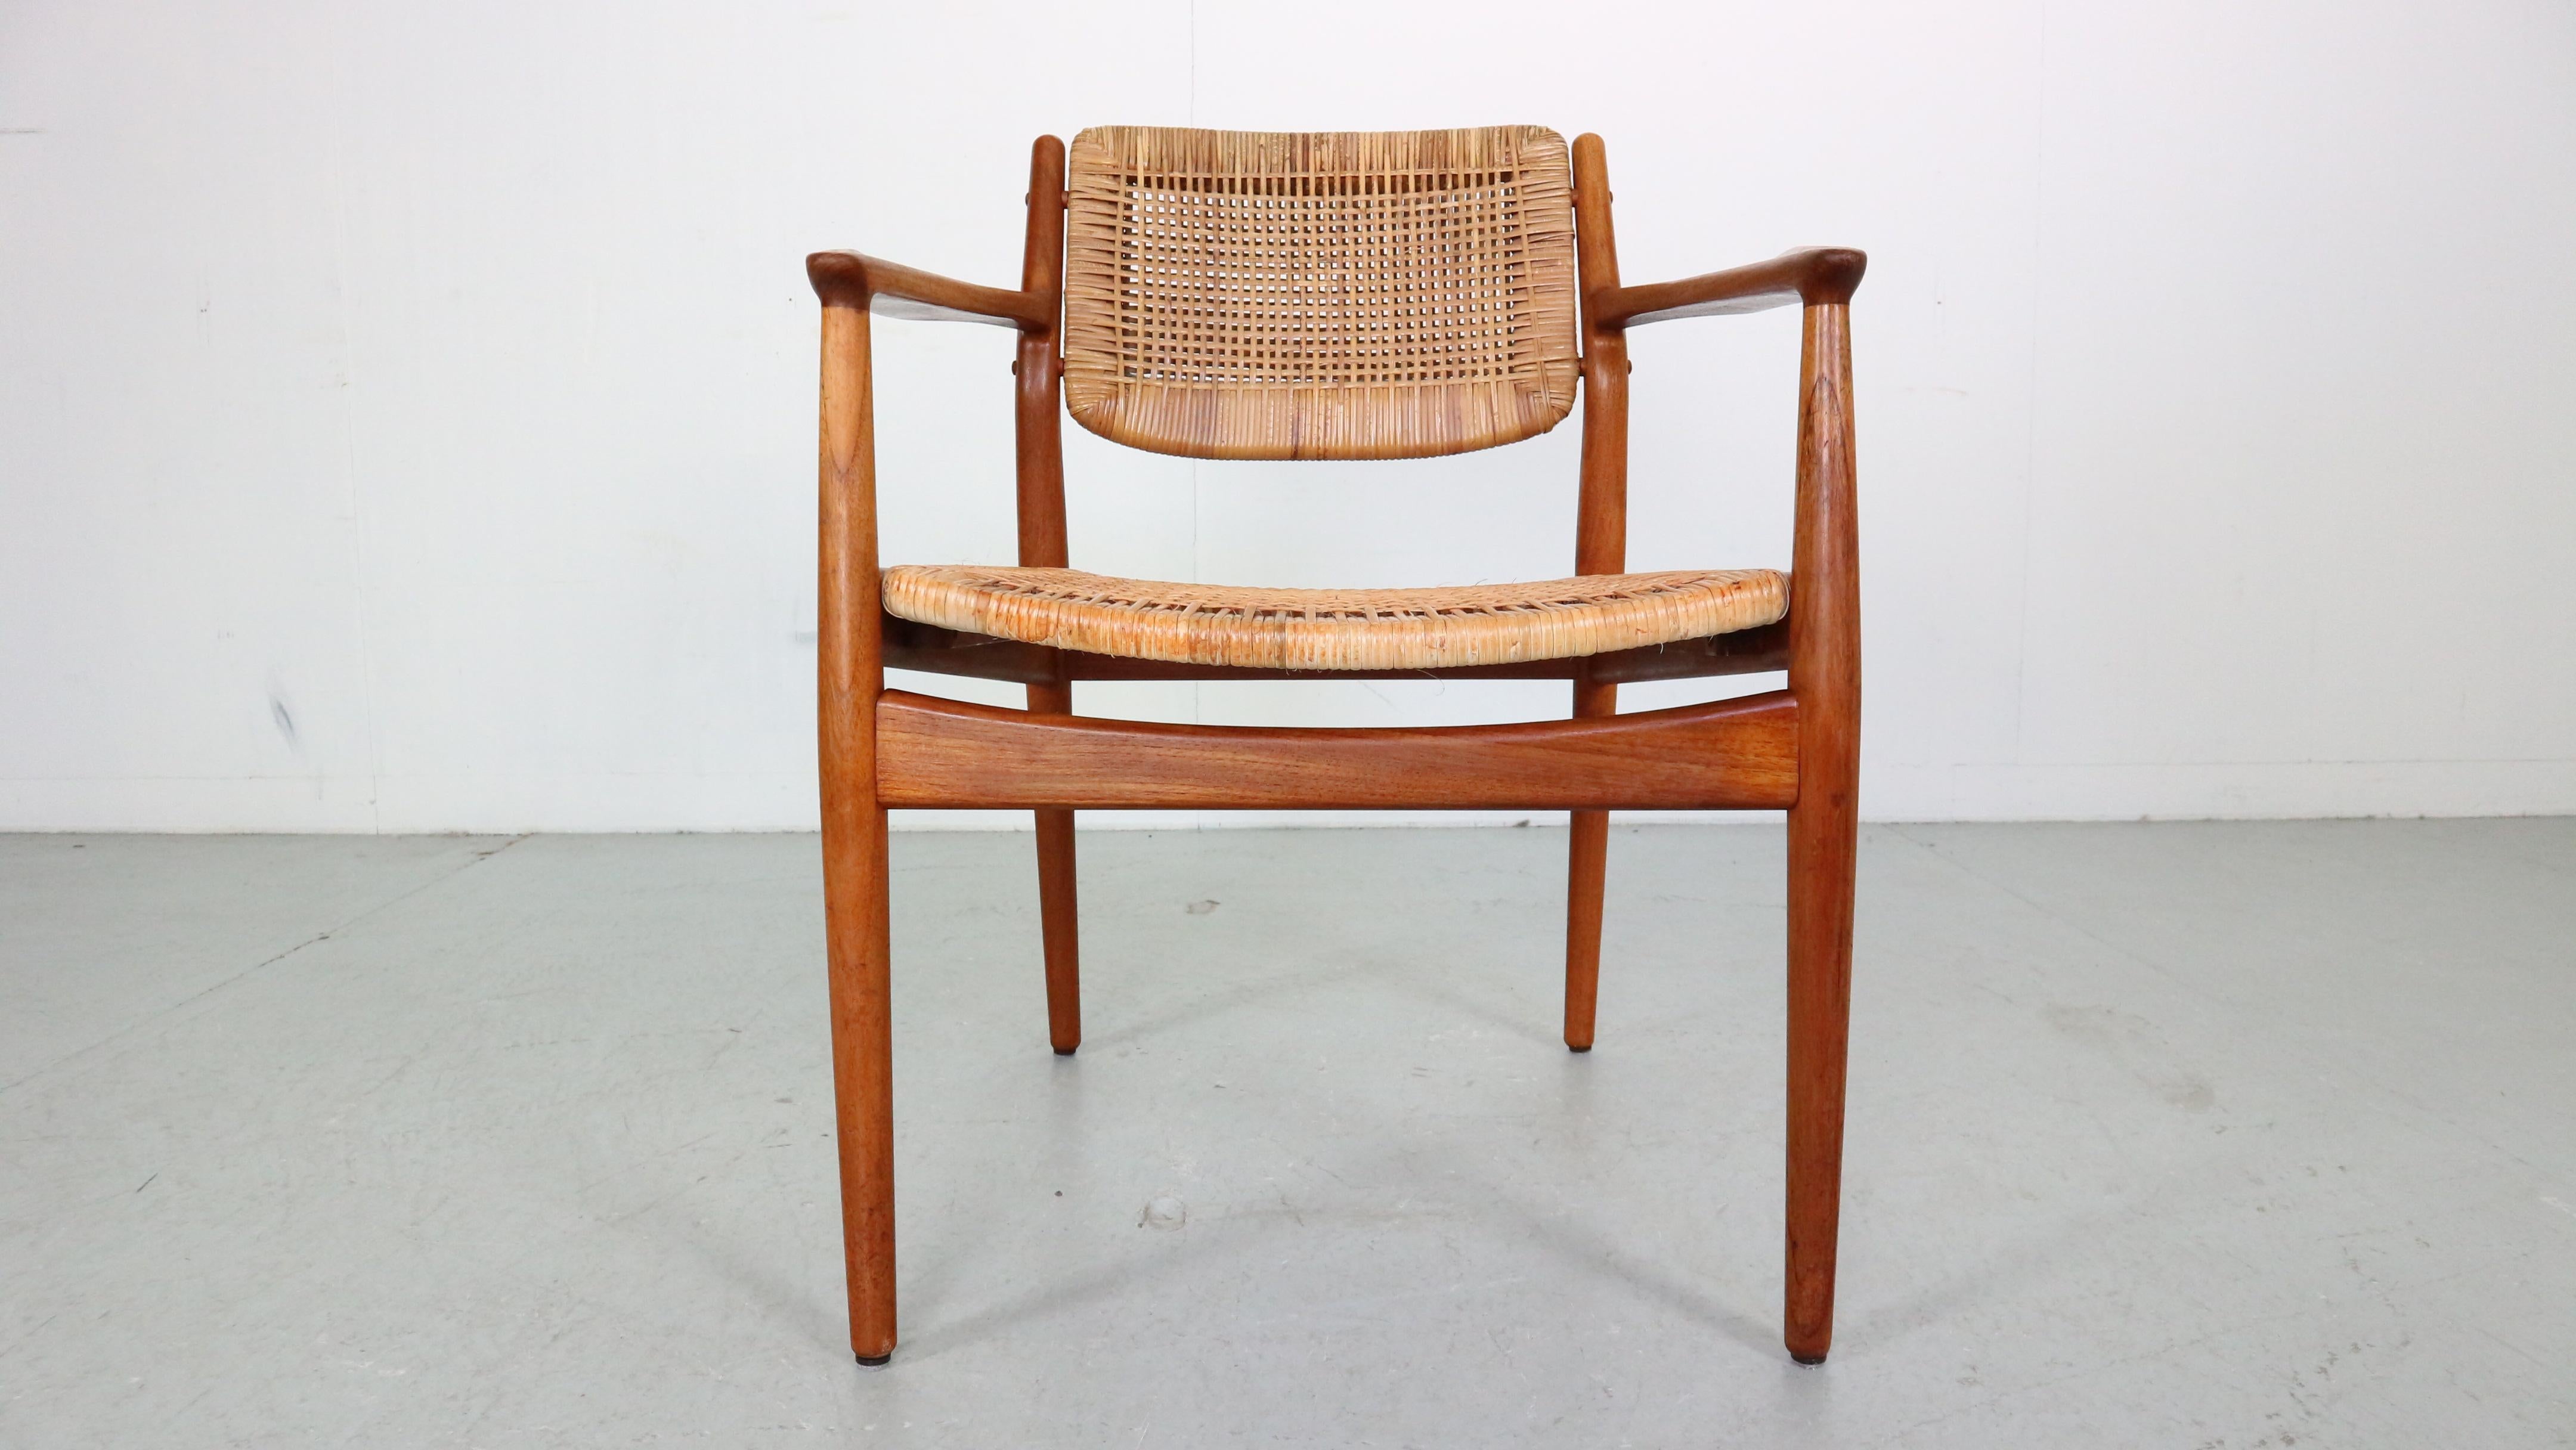 Seltener dänischer Design-Stuhl aus Teak und Rattan, entworfen von Arne Vodder für Sibast Furniture in den 1950er Jahren. Arne Vodder wurde von Finn Juhls ausgebildet und wurde schließlich sein Geschäftspartner. Er studierte bei Juhls an der